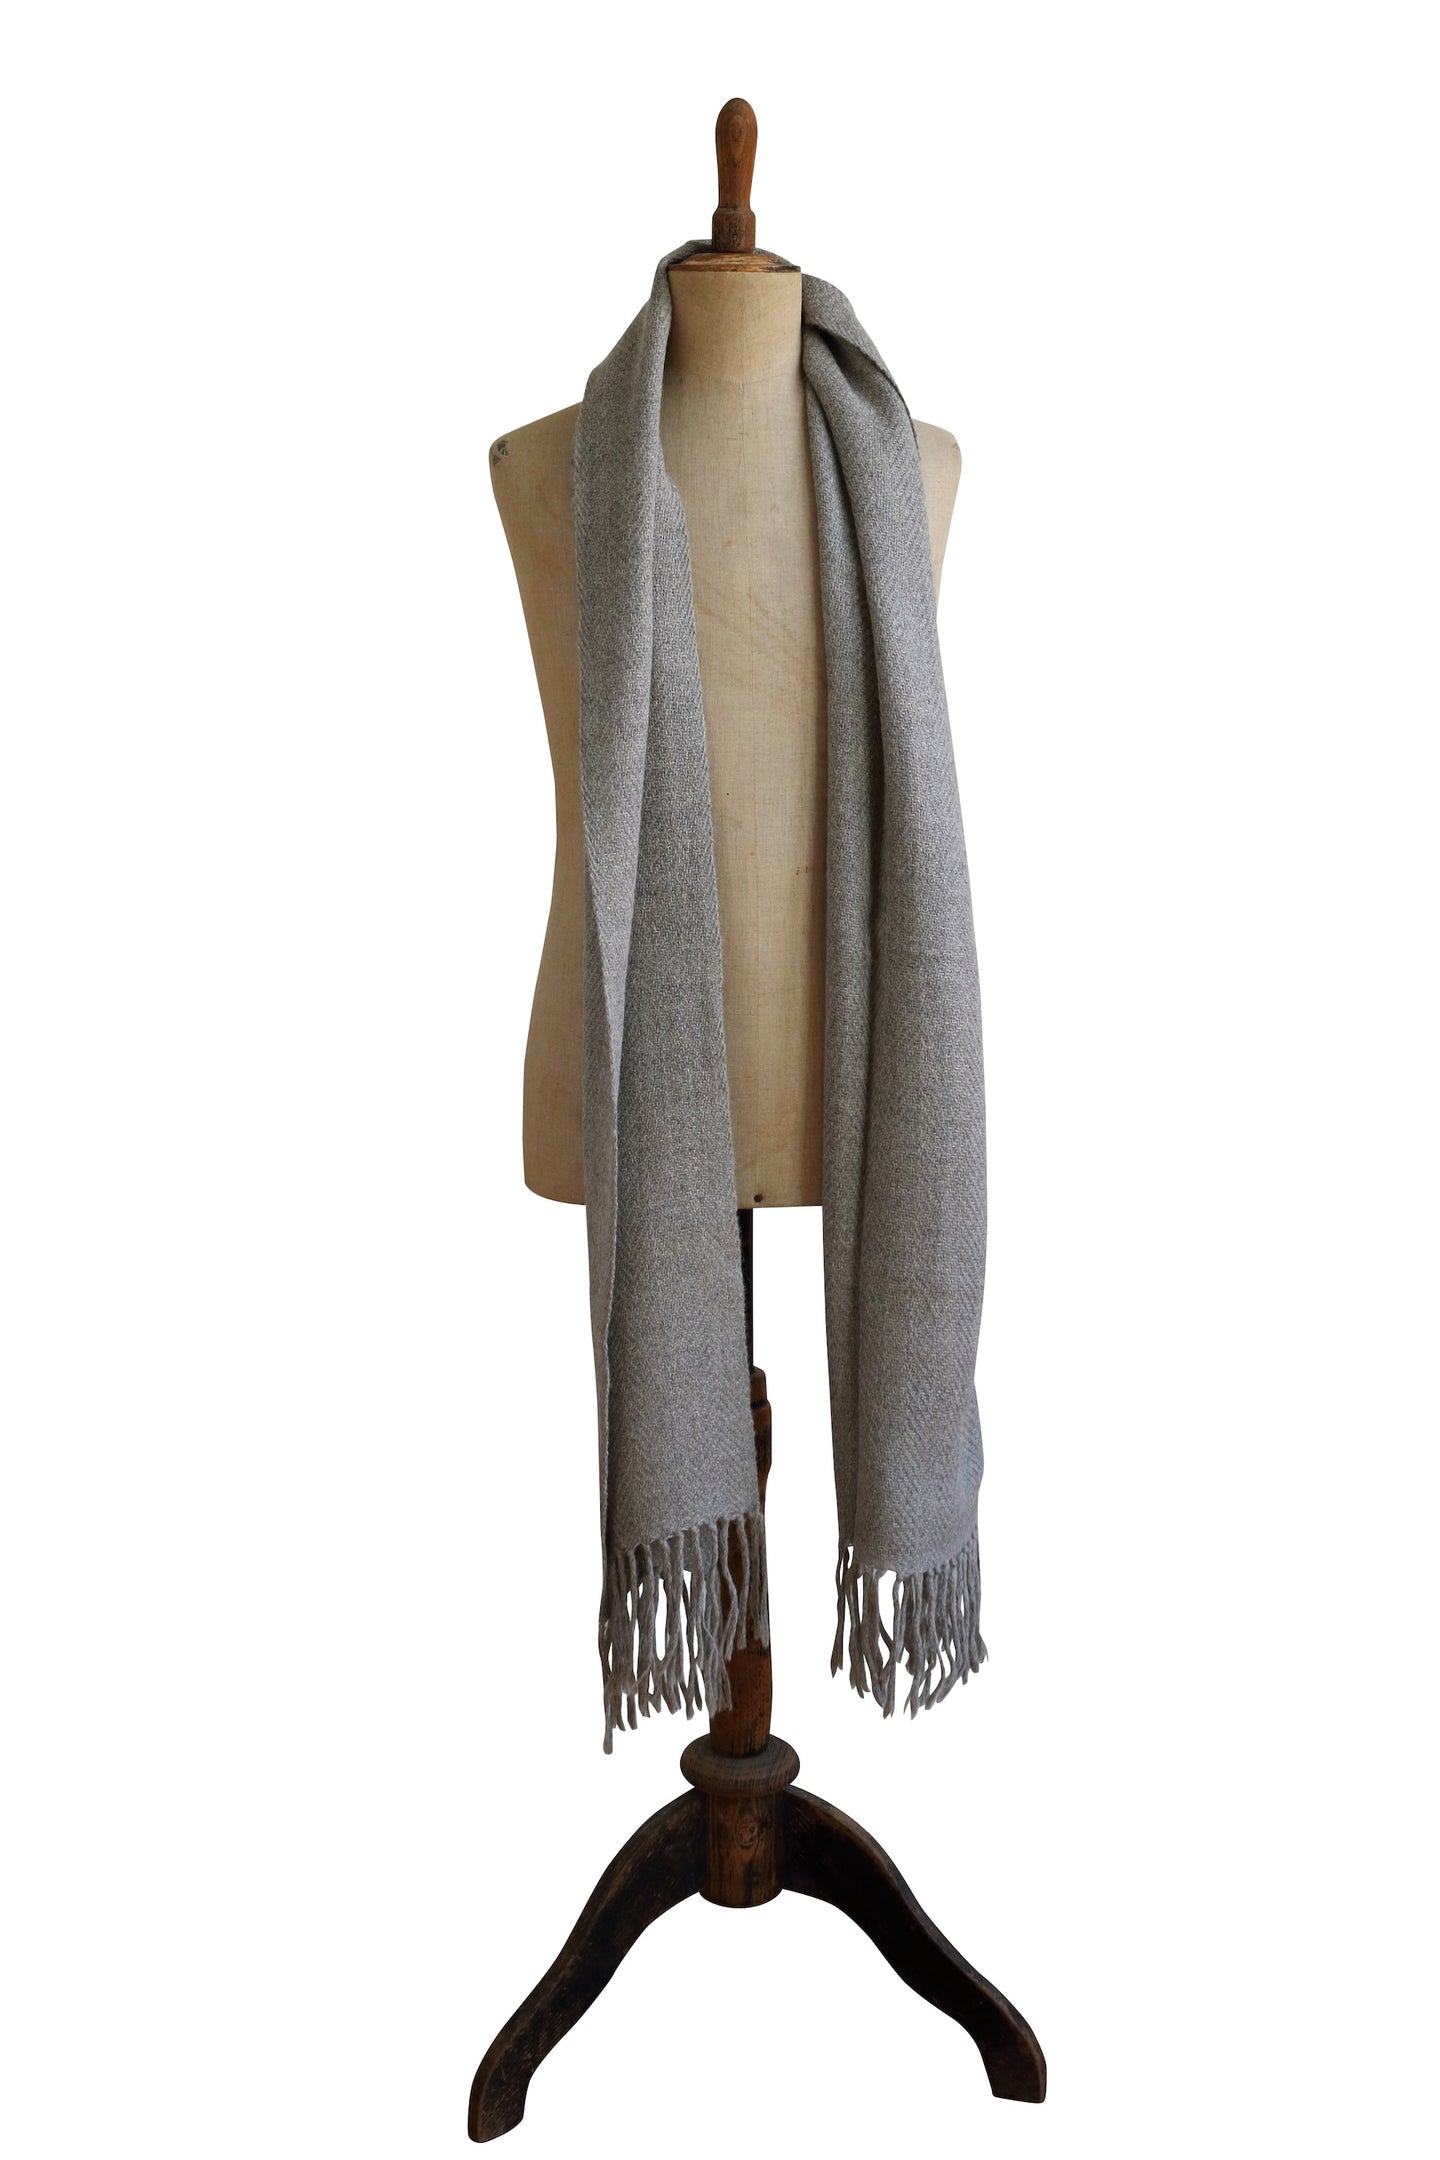 Medium light gray scarf